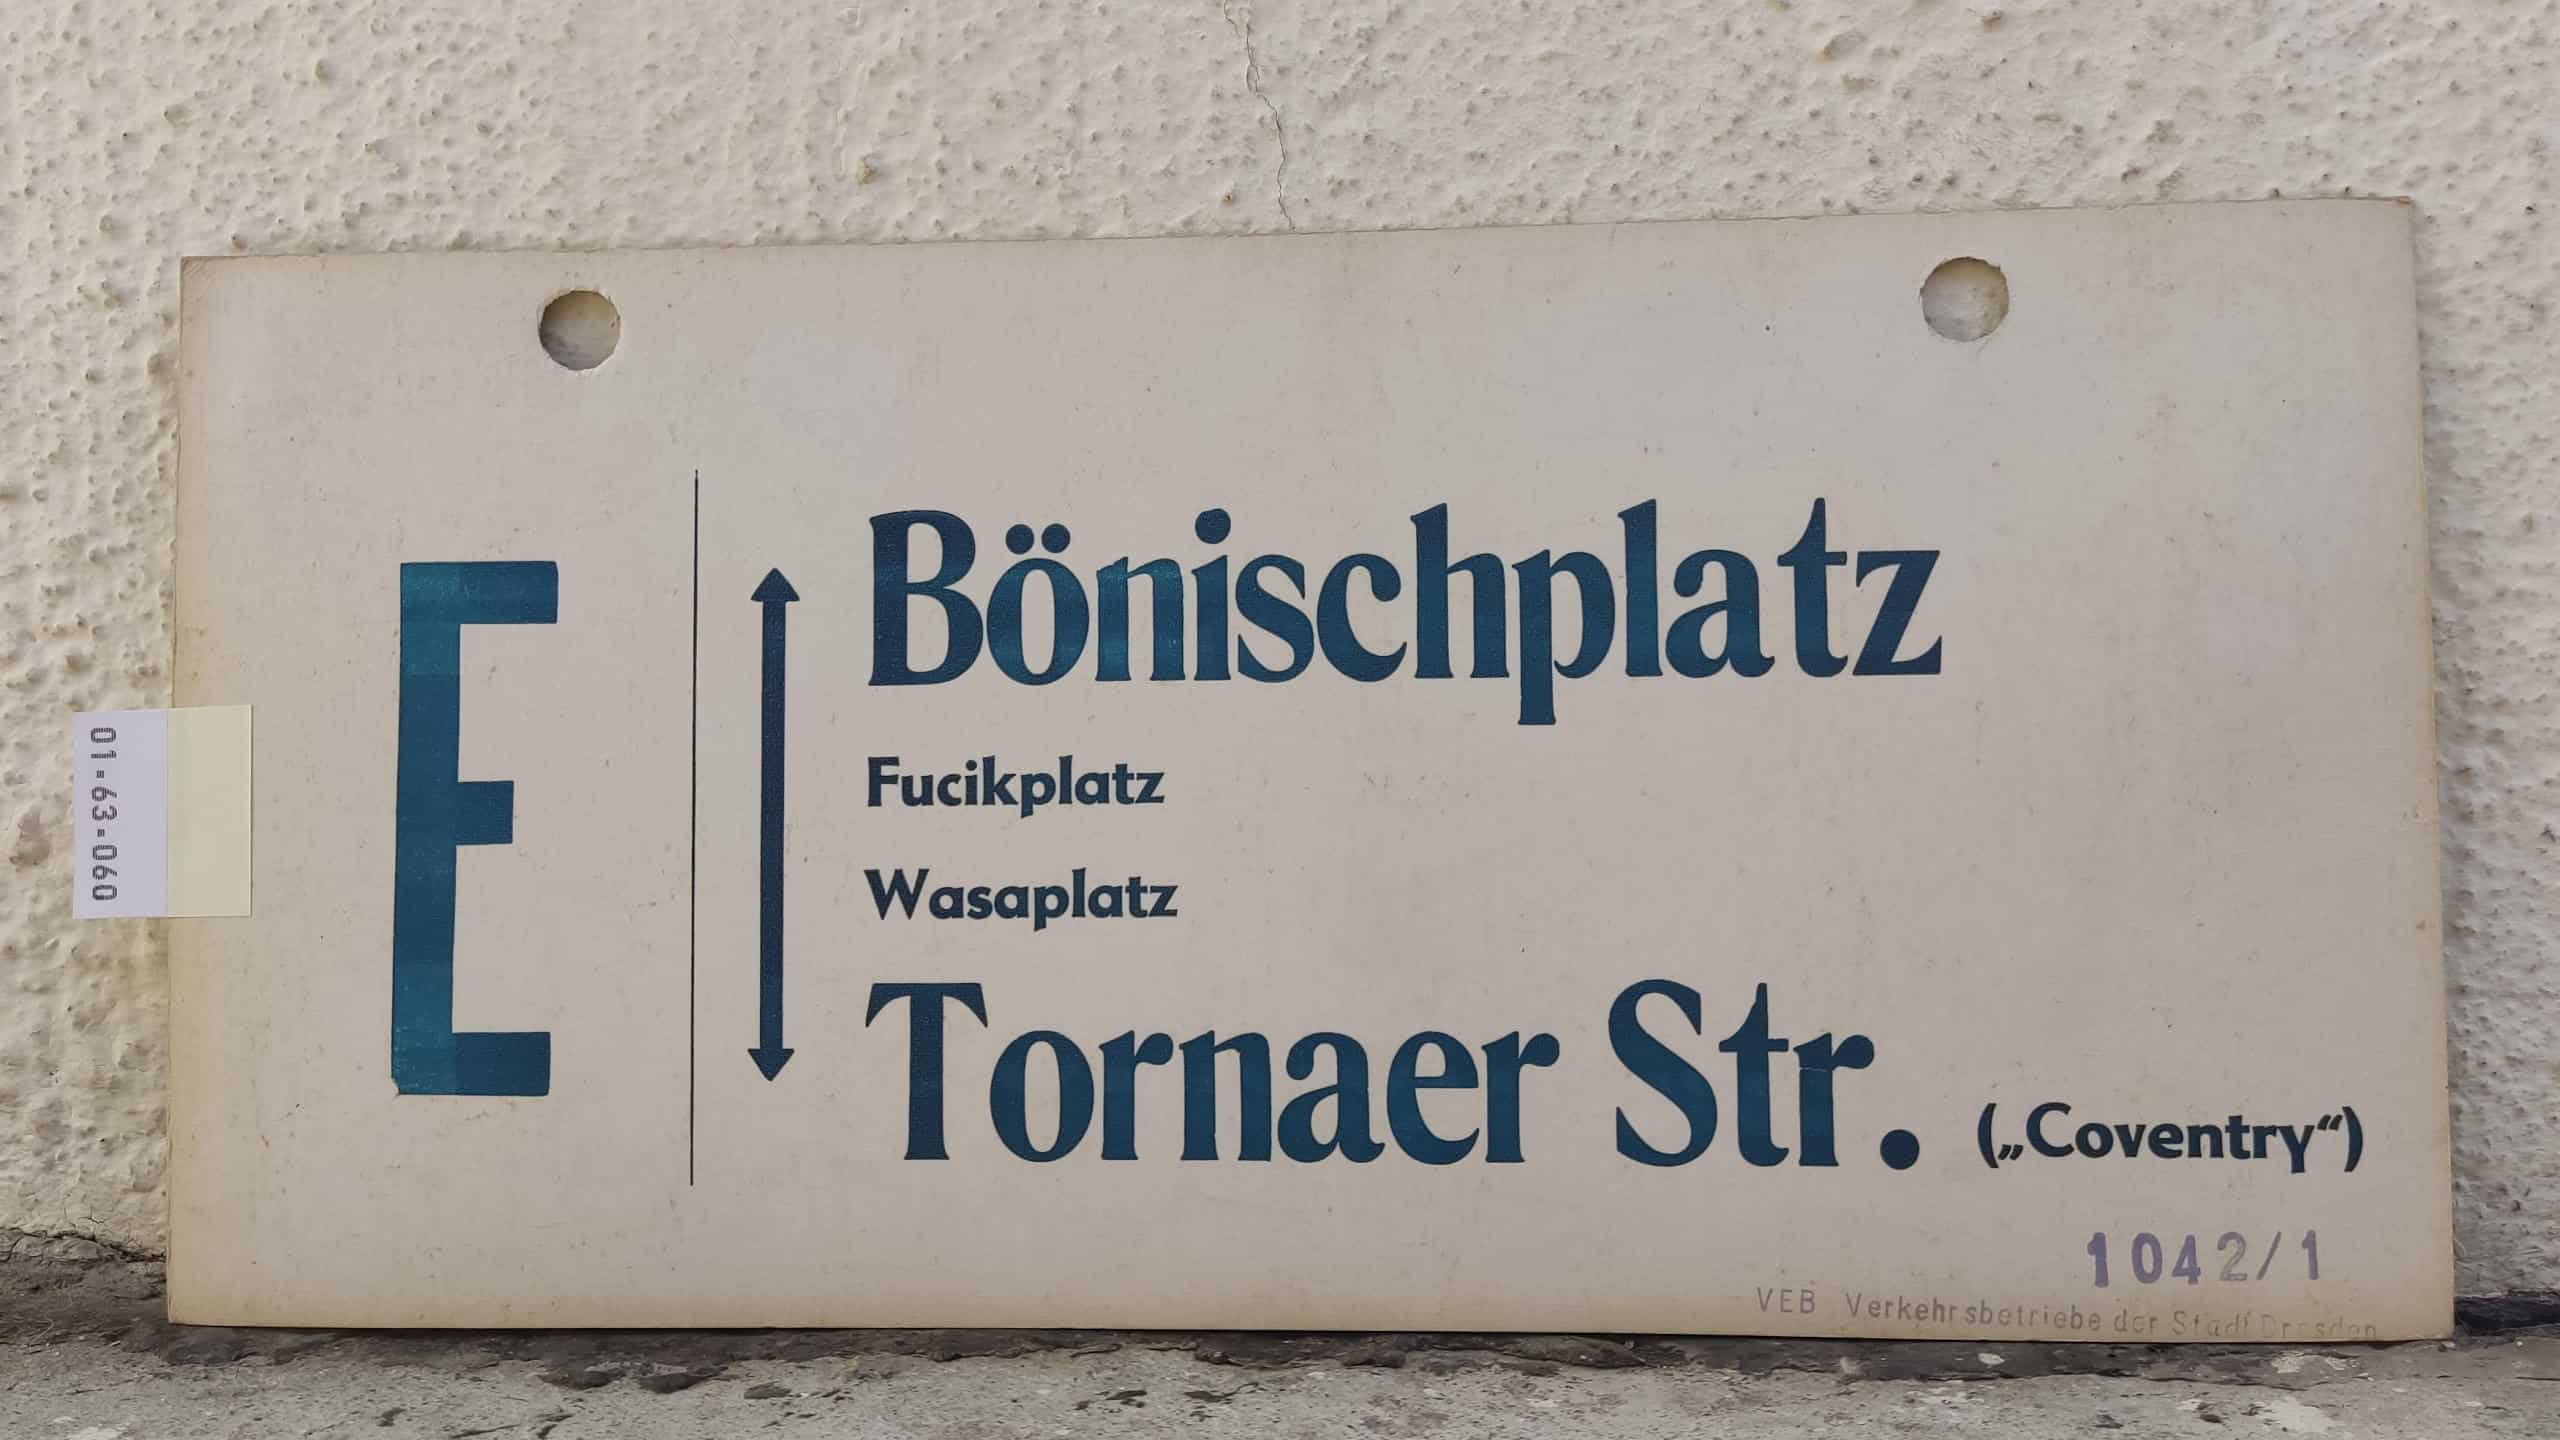 E Bönischplatz – Tornaer Str. ("Coventry")